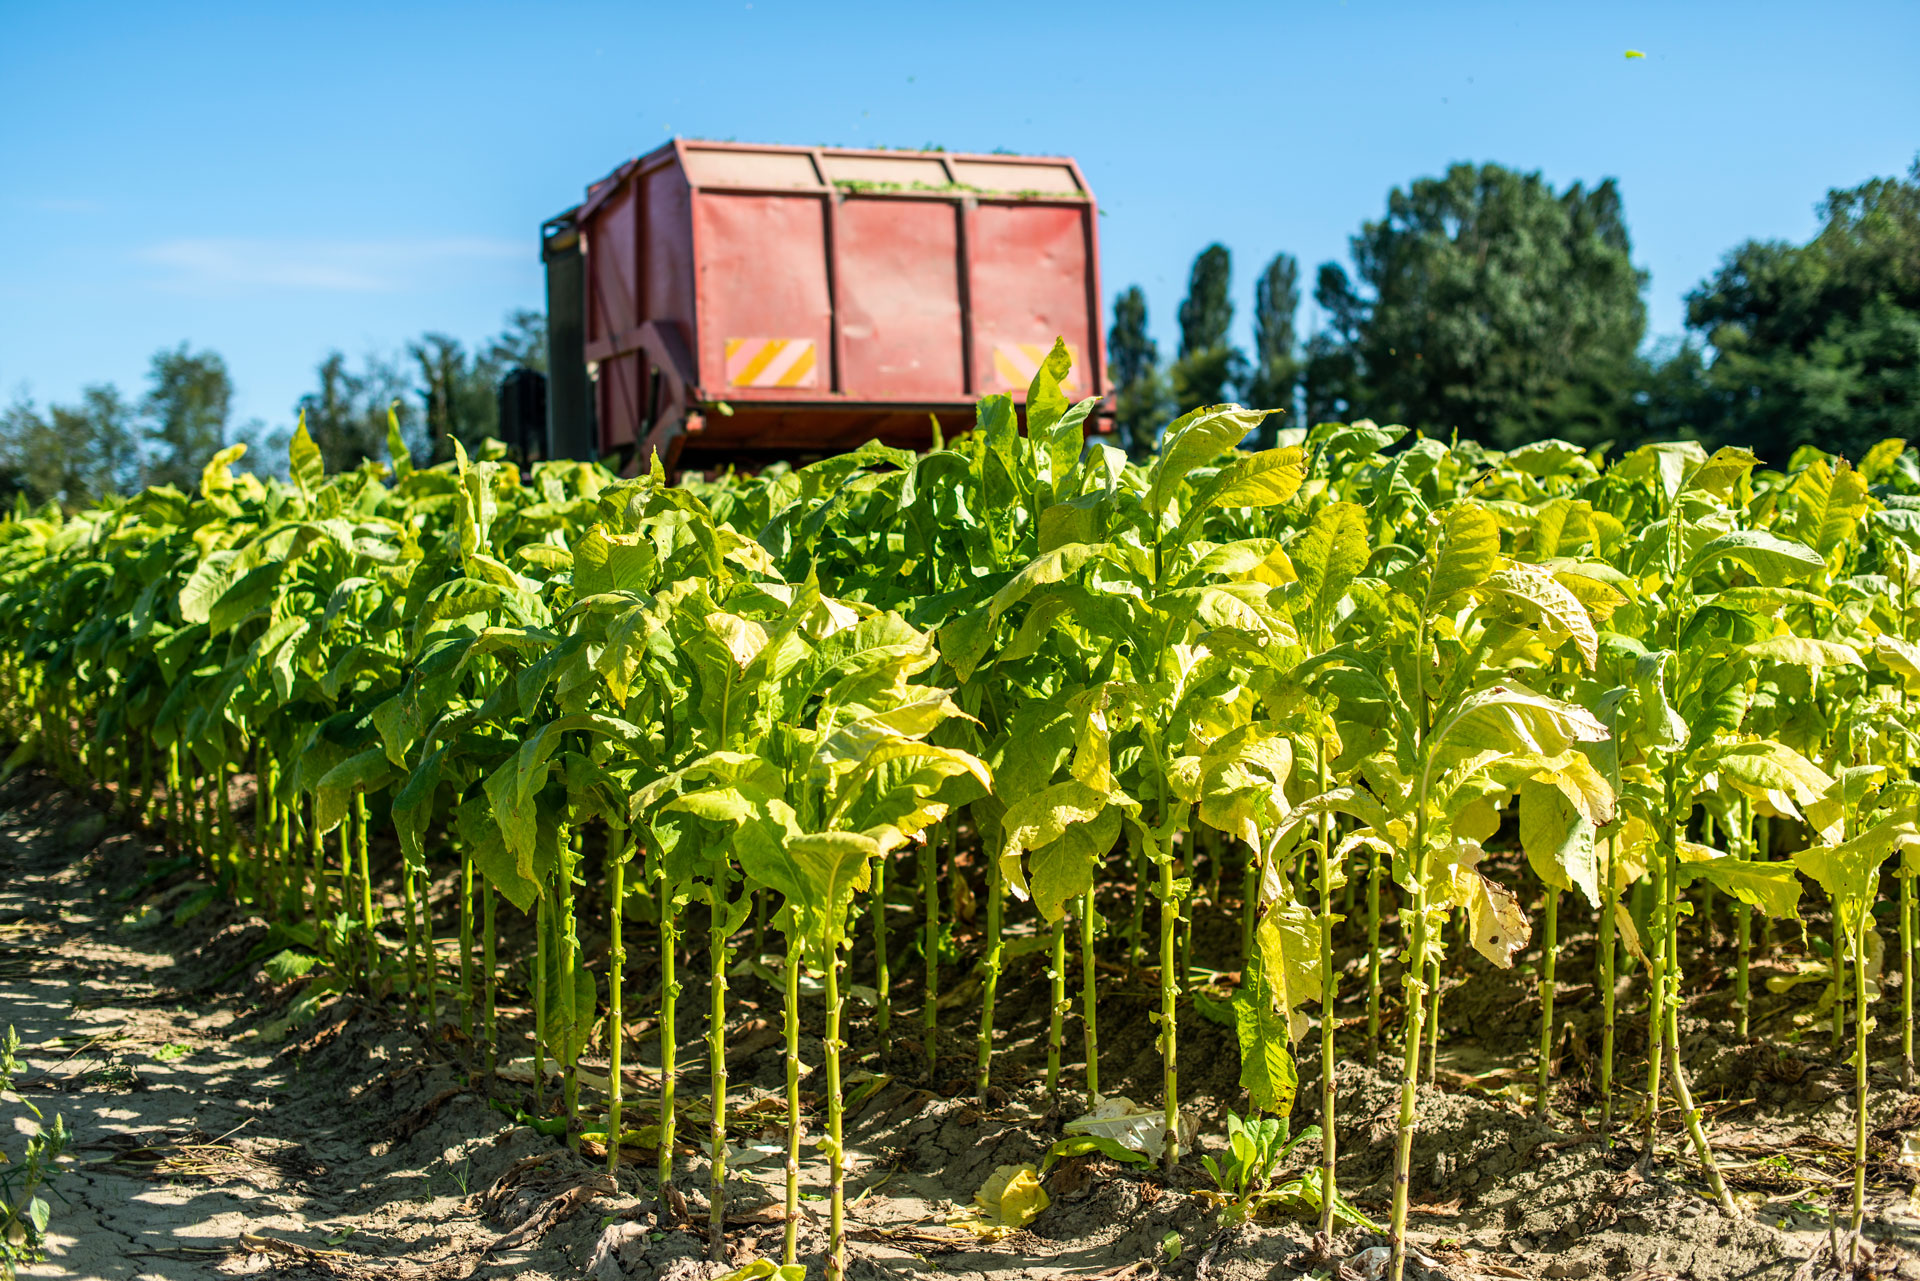 La récolte en plein champ de feuilles de tabac. © deyangeorgiev